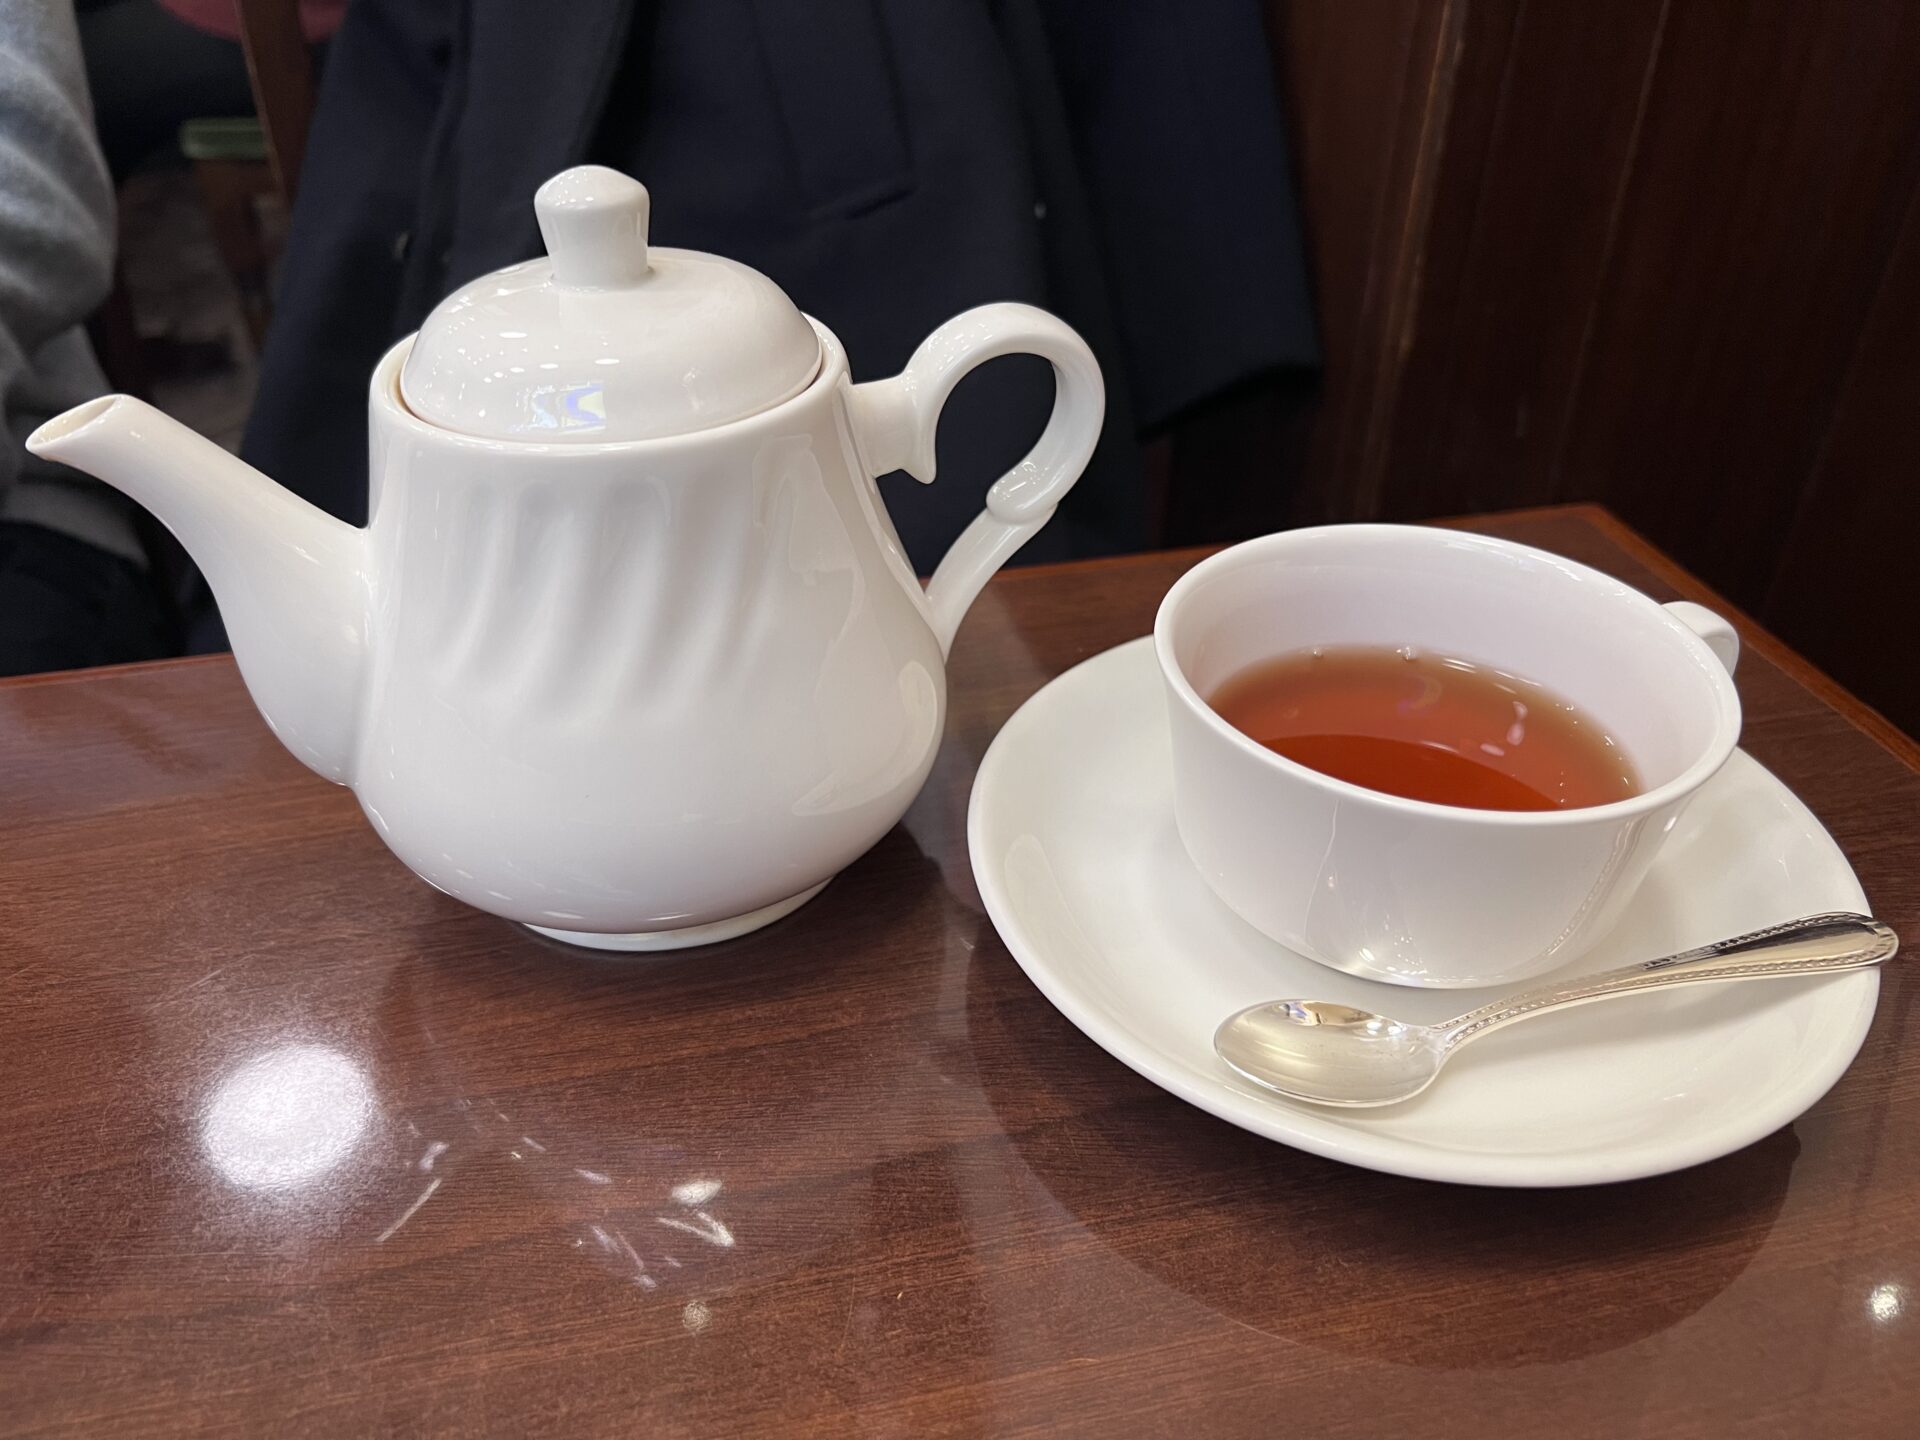 文明堂茶館 Le Cafe 紅茶